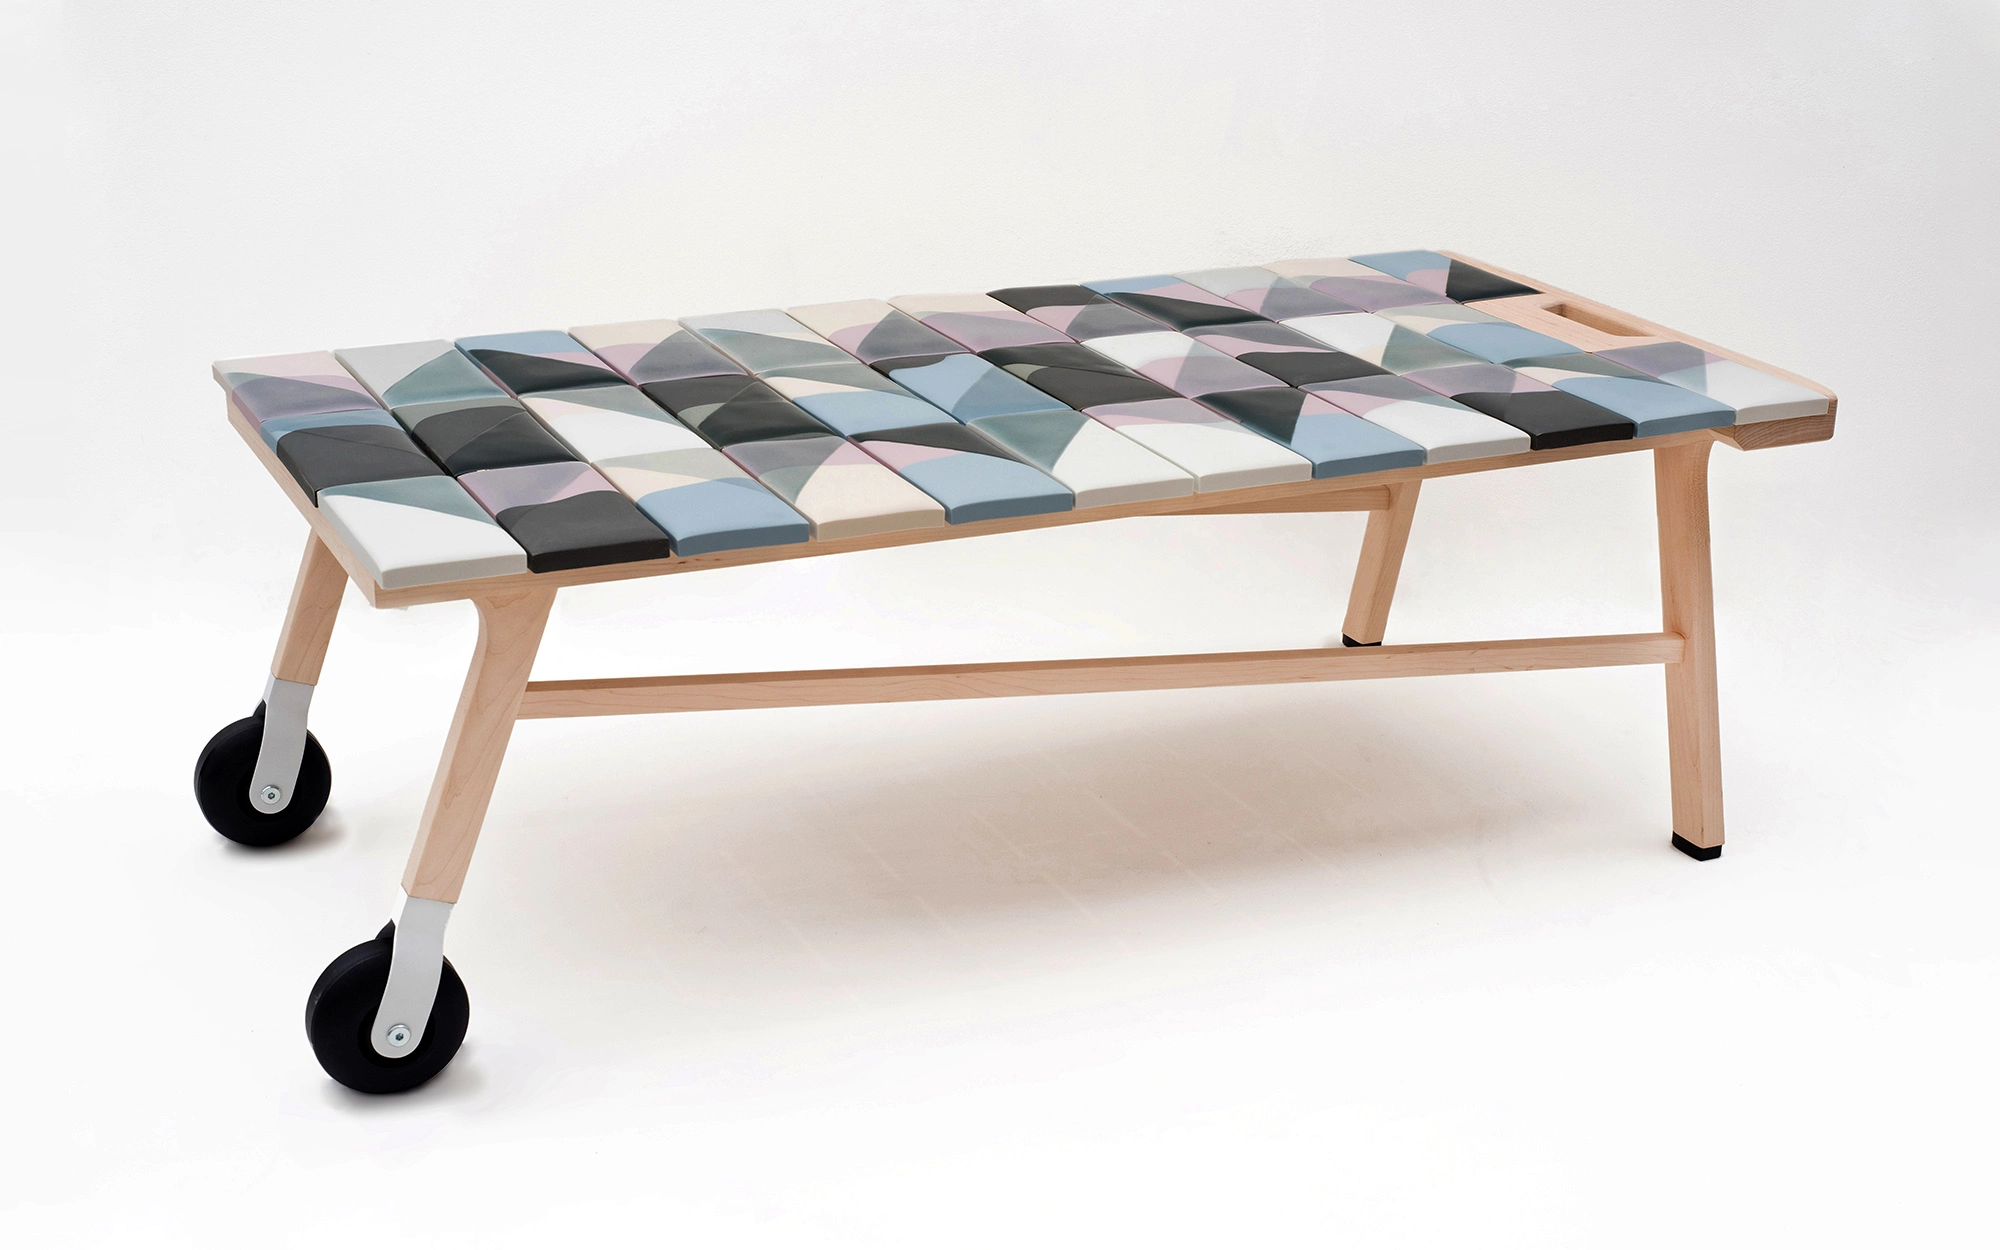 Tiles coffee table - Hella Jongerius - coffee-table - Galerie kreo